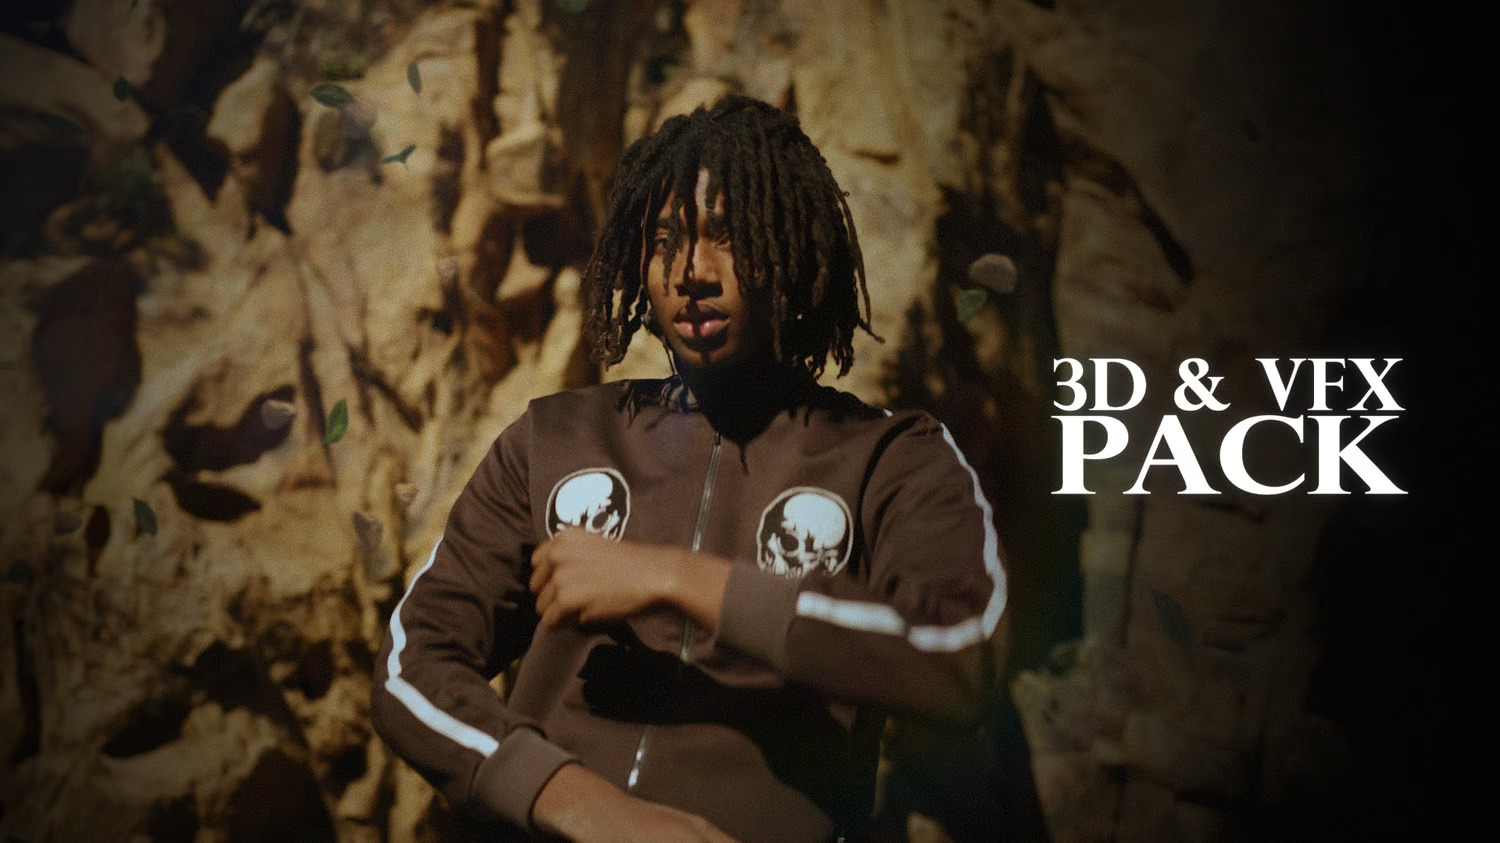 复古嘻哈酷炫音乐视频 影视后期特效 摇晃运动 3D标题预设 LUT和音效 转场过渡 视觉特效捆绑套装 ULTIMATE LINGO BUNDLE , 第6张